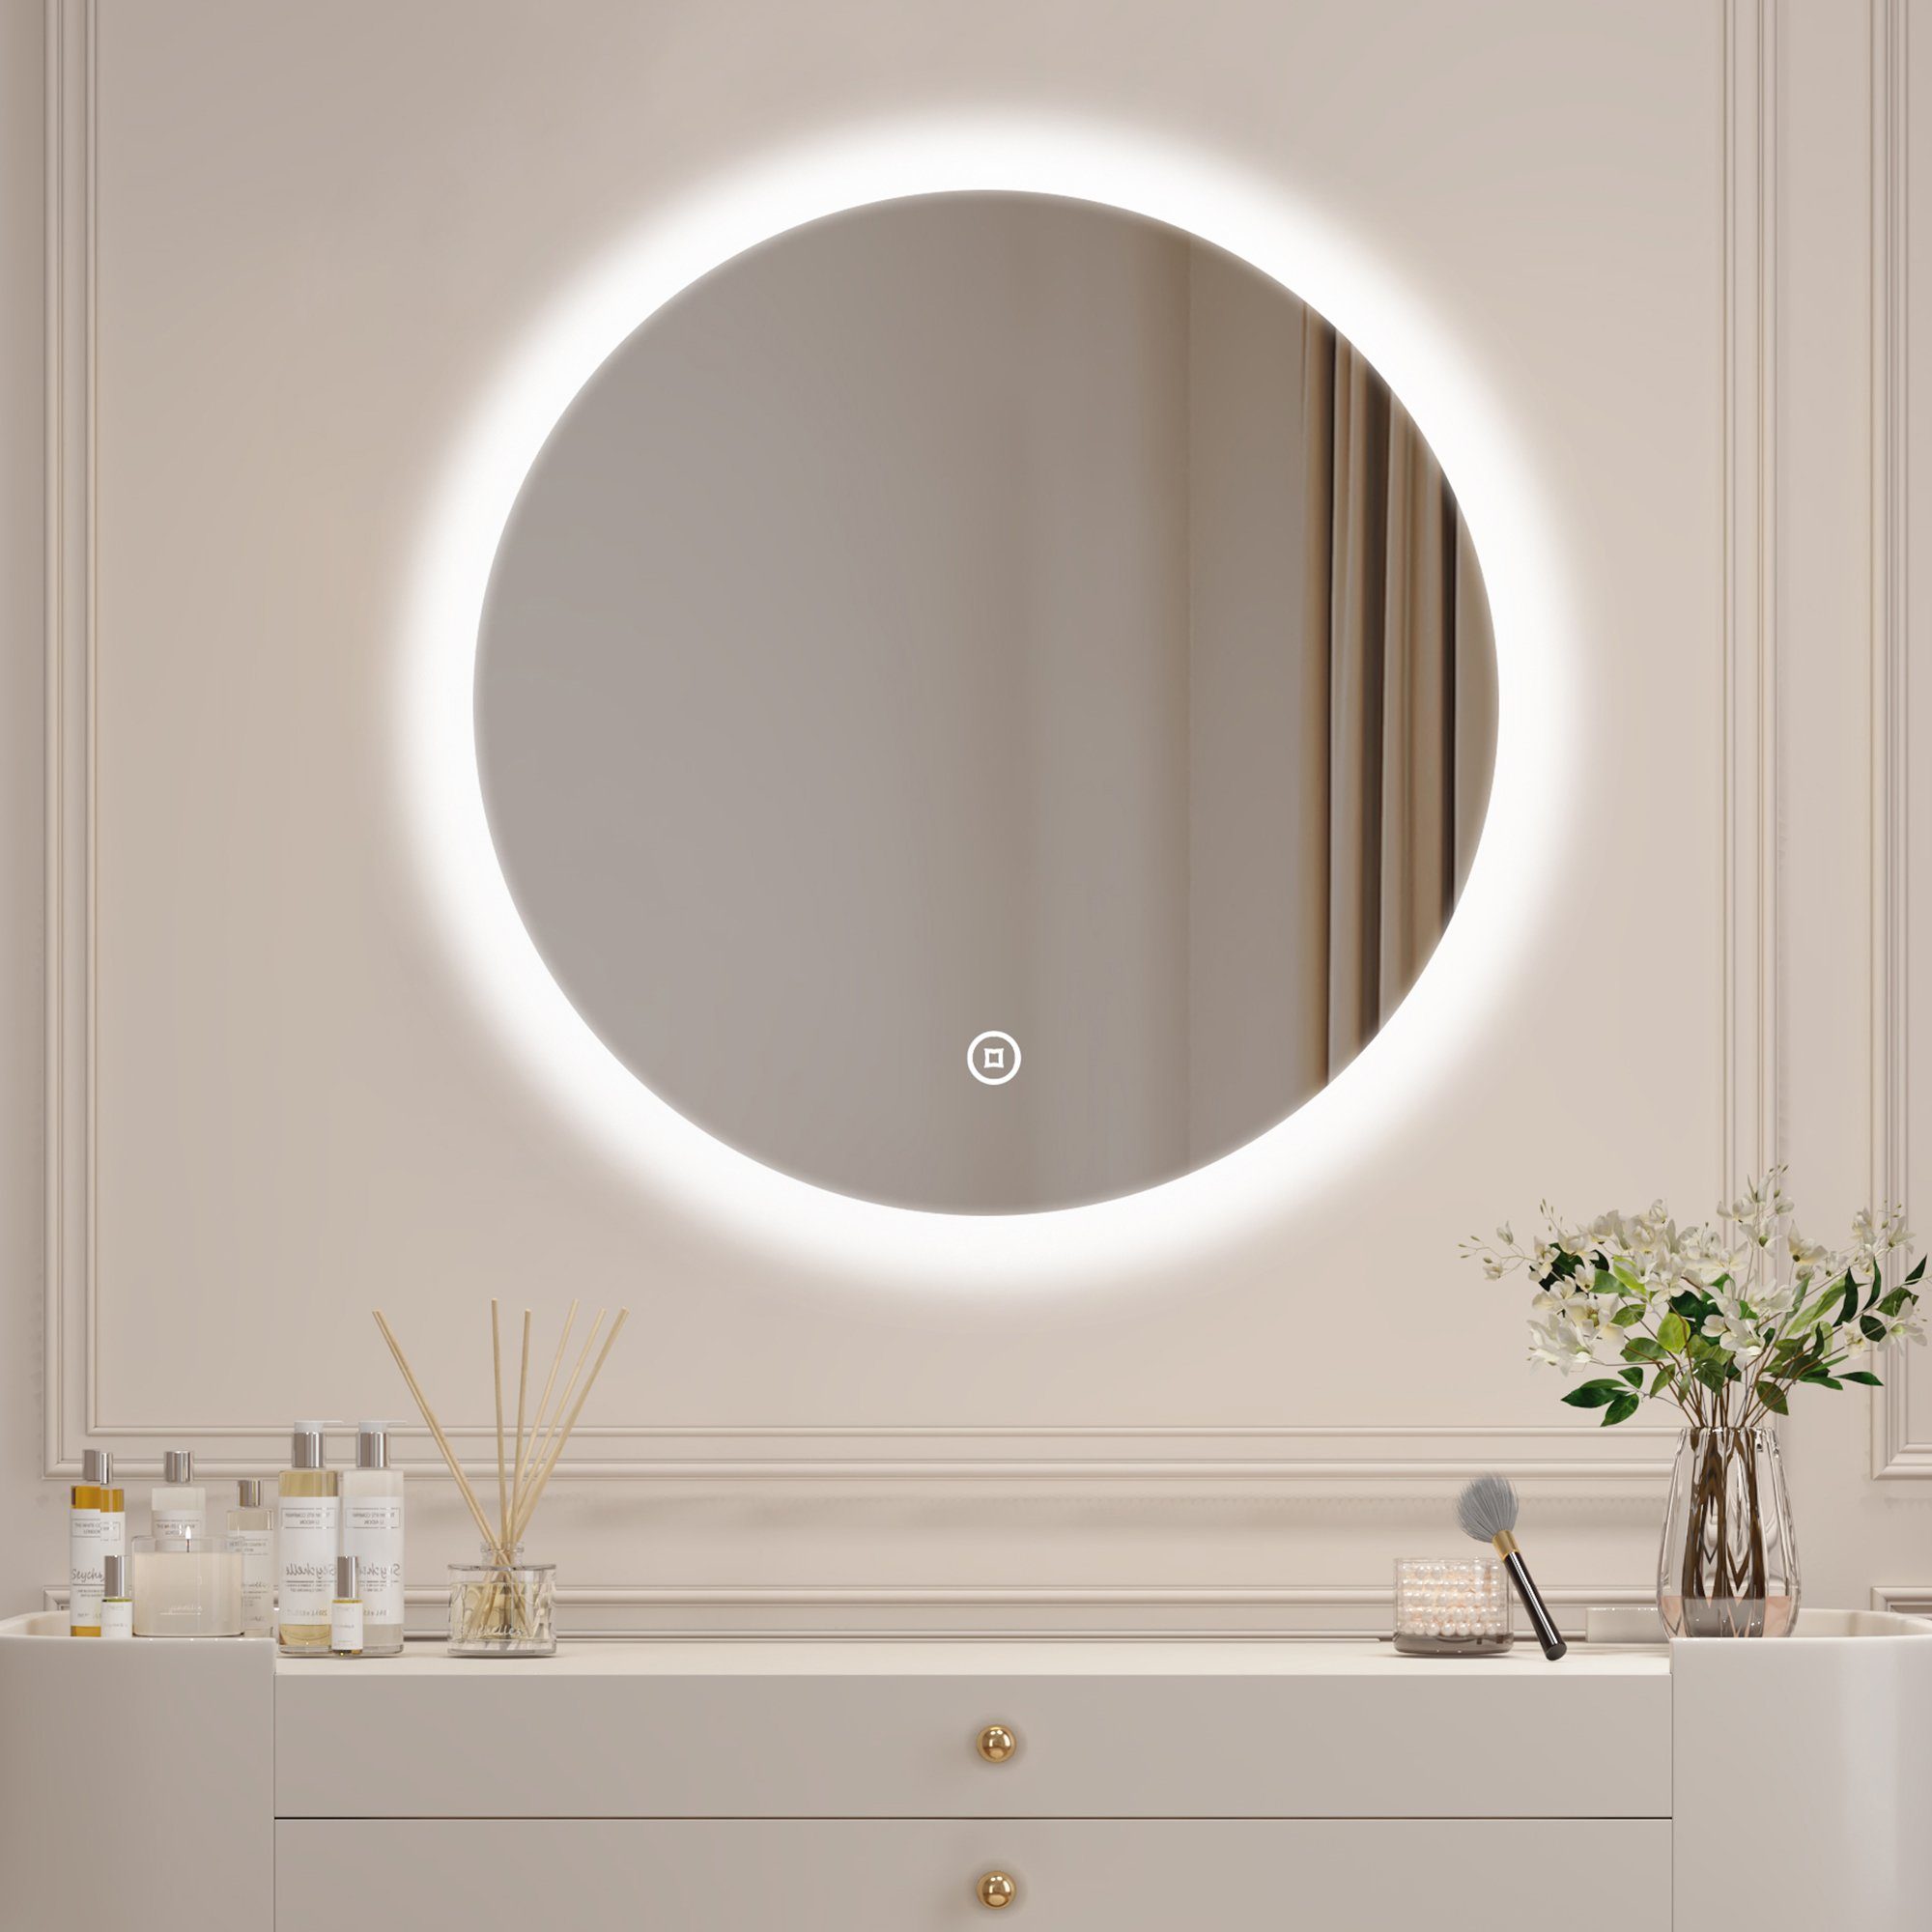 WDWRITTI Schminkspiegel Kosmetikspiegel mit LED beleuchtung Rund 60cm Wandmontage (Wandspiegel Badspiegel, Touch, Wandschalter), 3000/4000/6500K, Helligkeit dimmbar, Memory